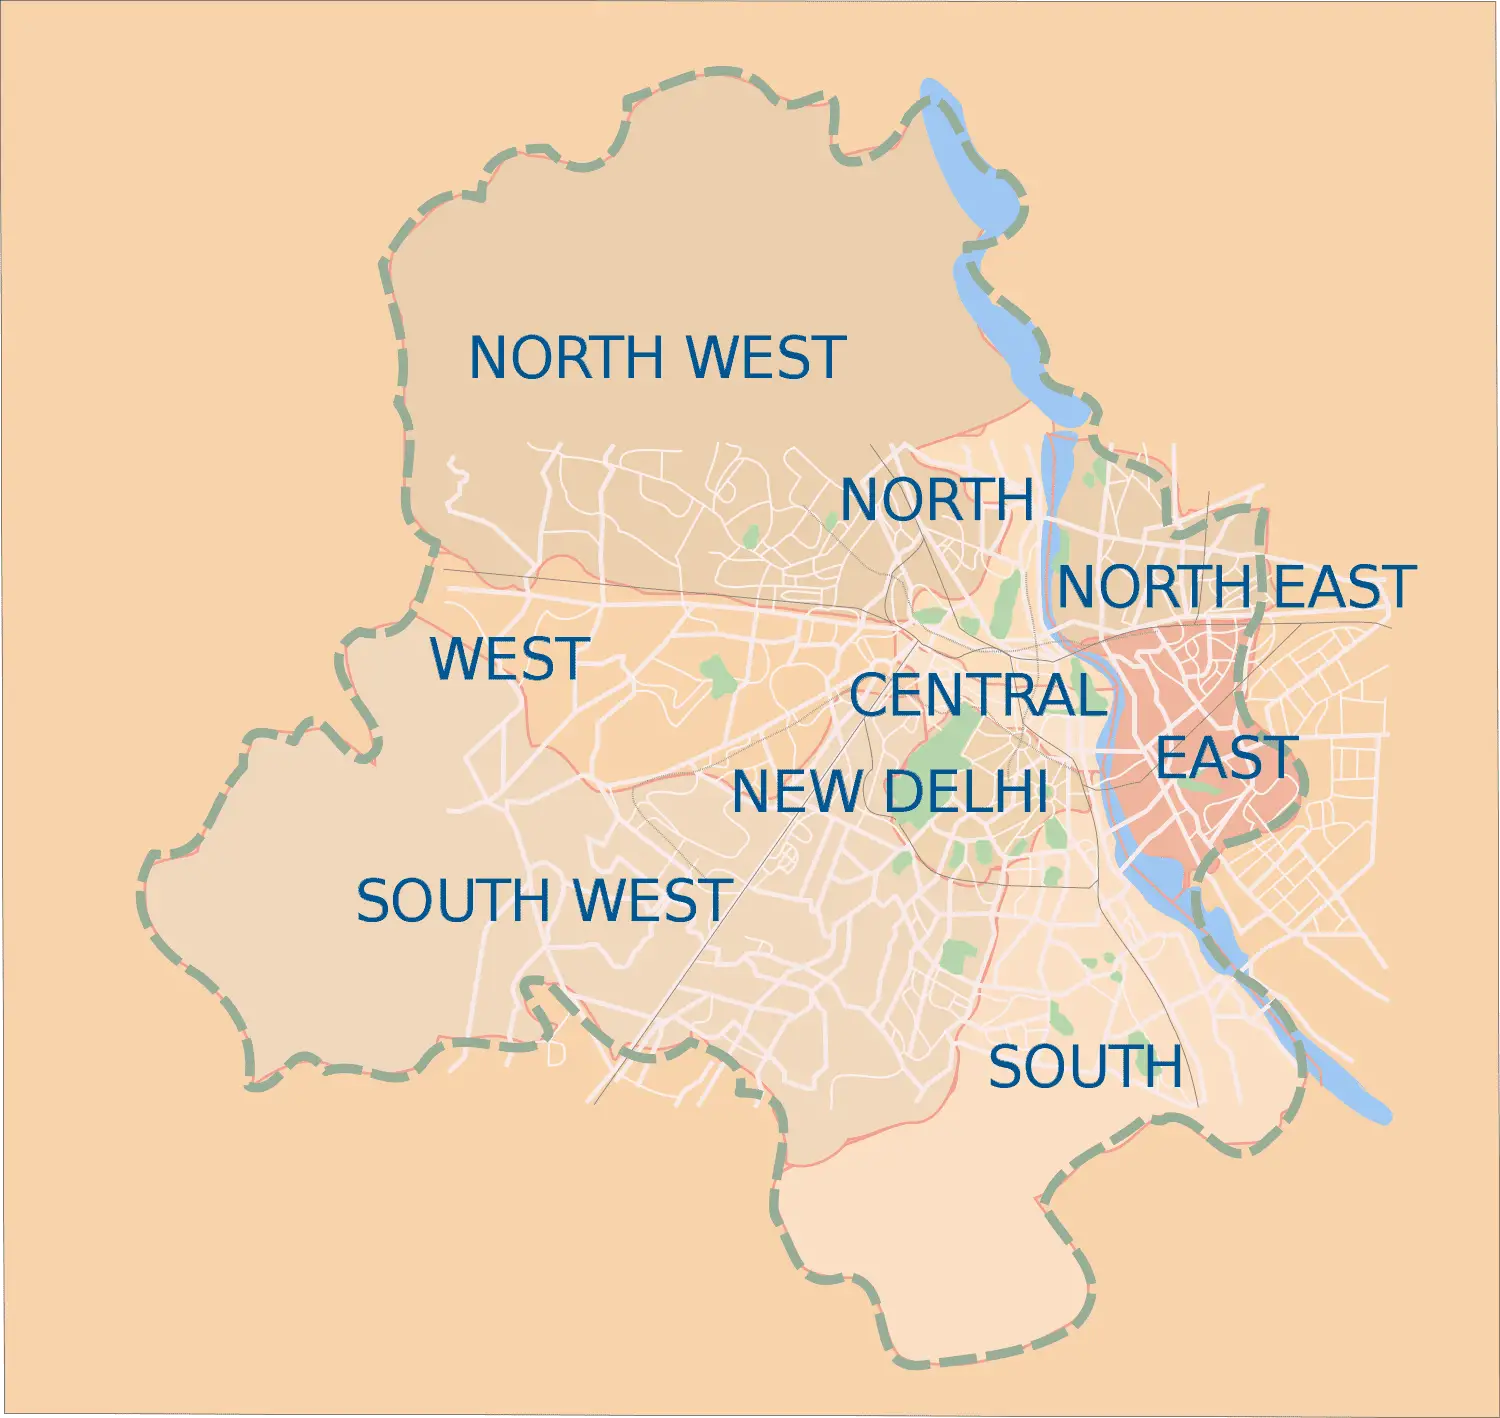 Delhi Districts Map